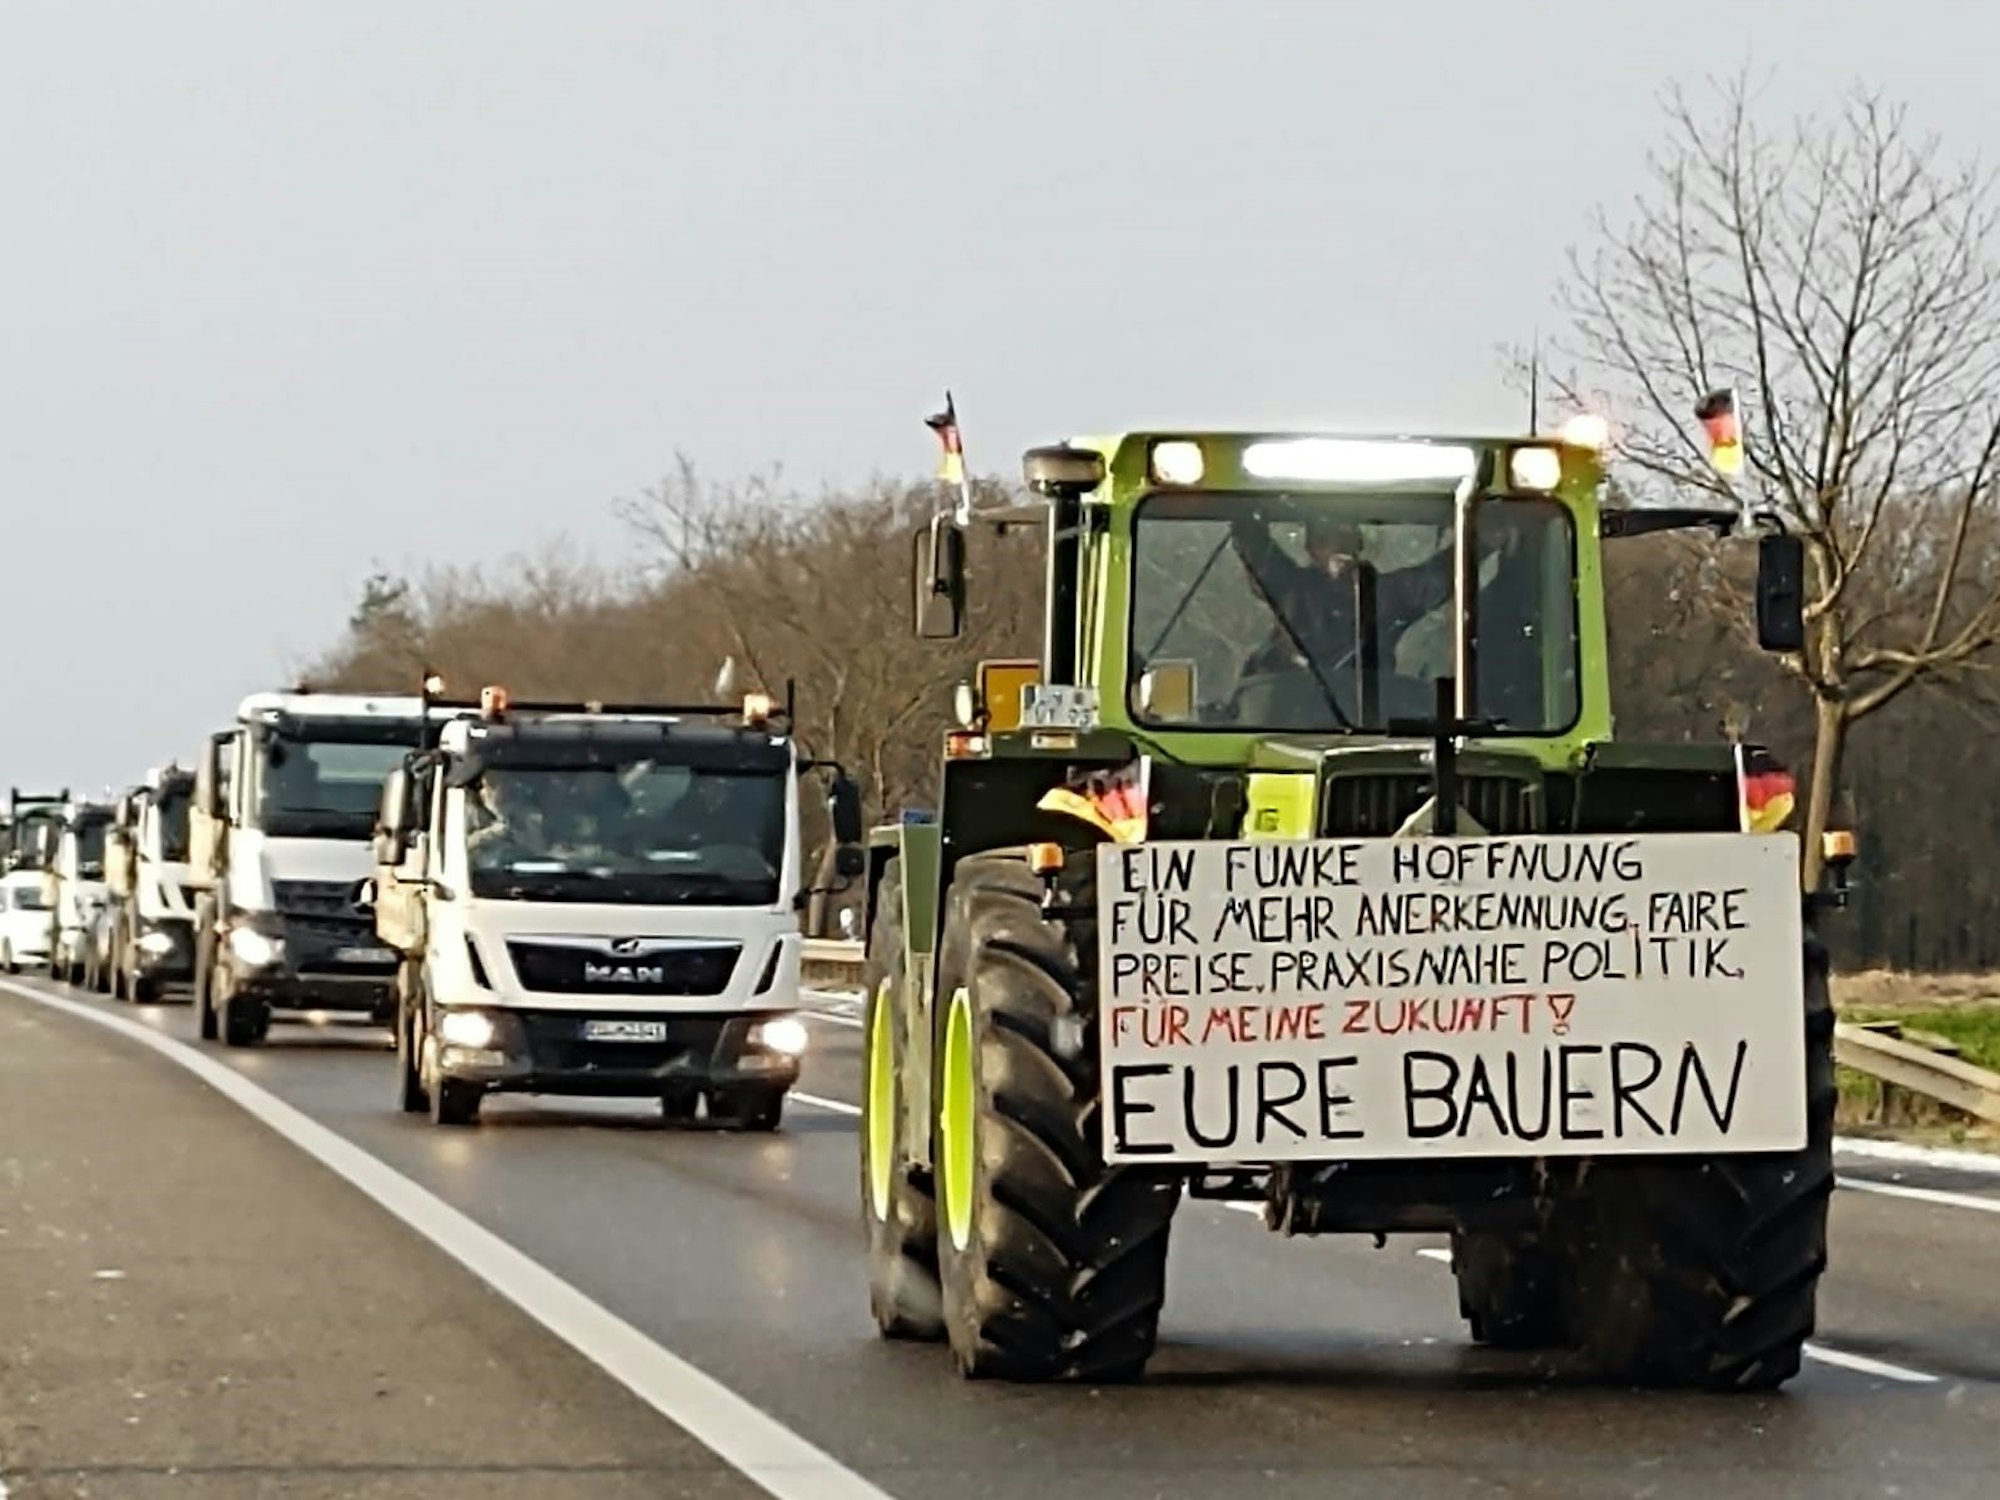 Ein Traktor und Fahrzeuge im Stau. Auf dem Traktor ein Schild mit der Aufschrift: „Ein Funke Hoffnung für mehr Anerkennung, faire Preise, praxisnahe Politik. Für meine Zukunft! Eure Bauern“.